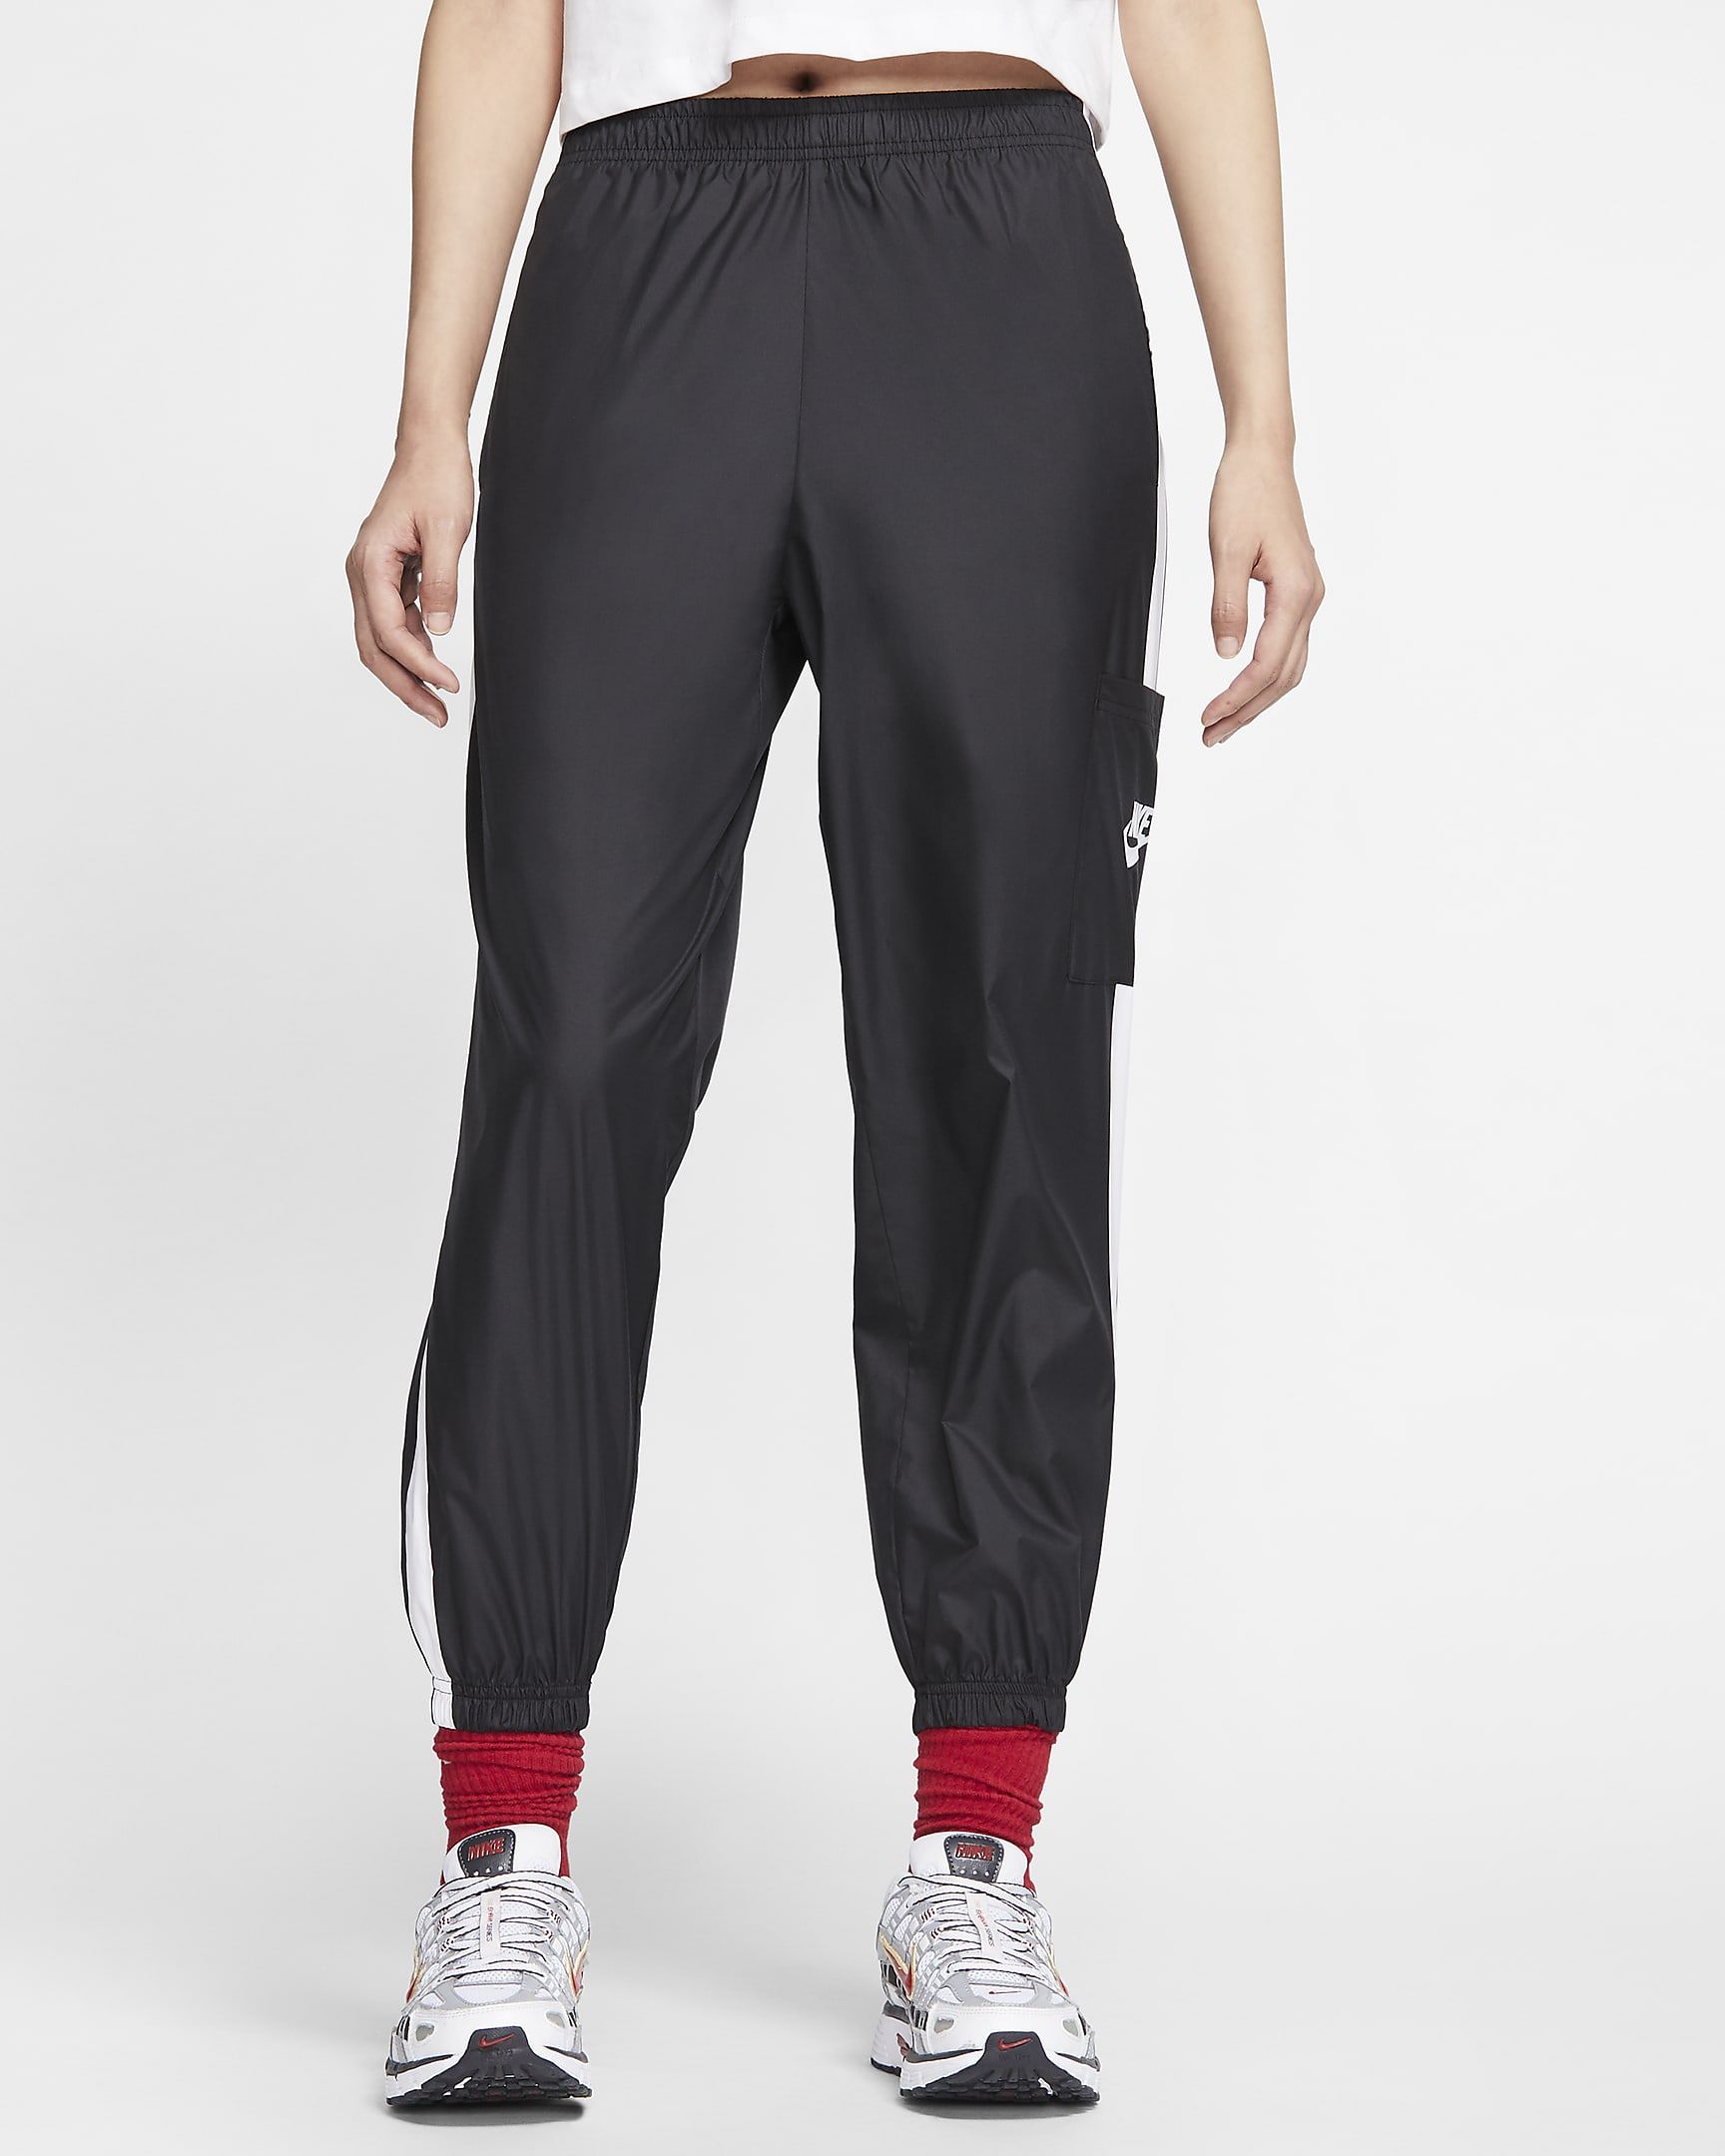 Nike Sportswear Women's Woven Pants. Nike.com | Nike (US)